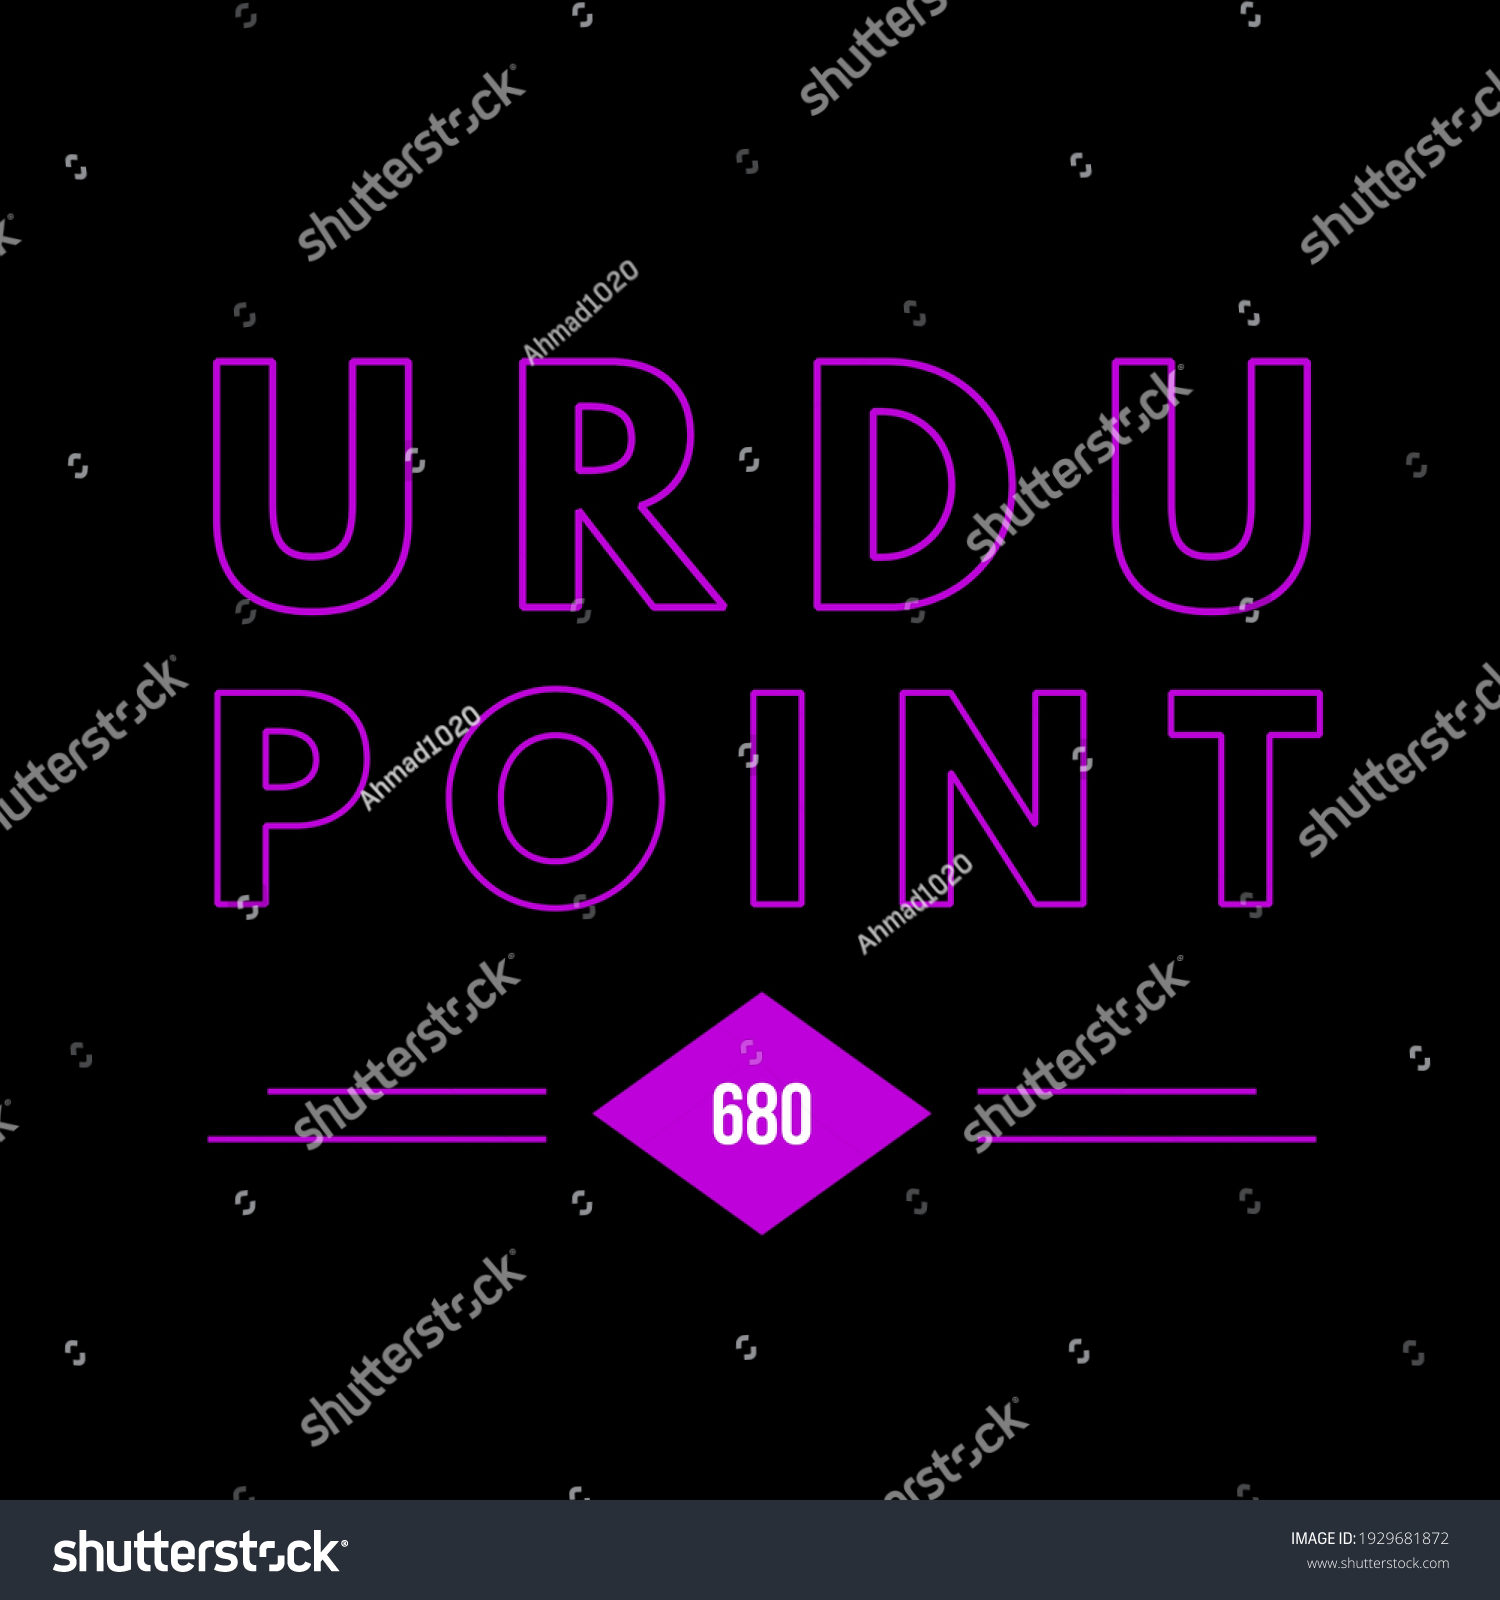 Urdu point